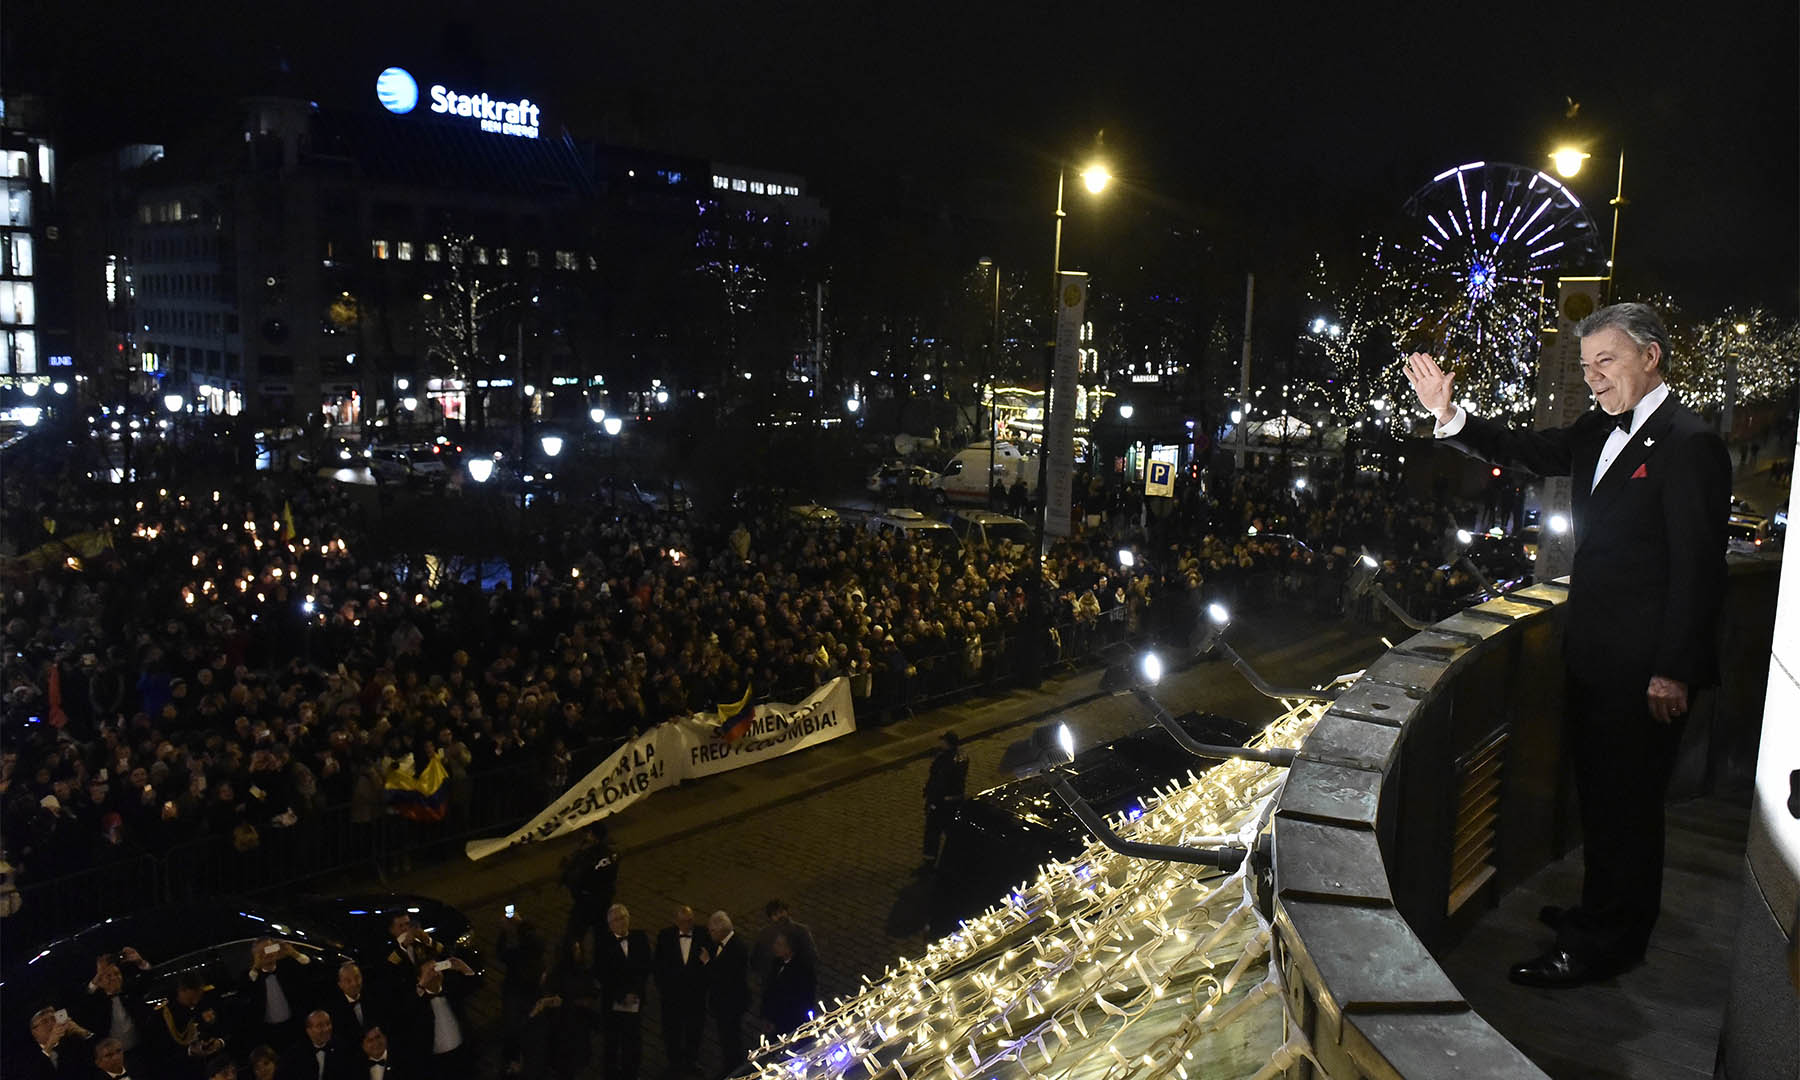 El Presidente Juan Manuel Santos saluda desde el balcón del Grand Hotel la marcha de las antorchas, con la que el pueblo Noruego lo agasaja,  tras recibir el Premio Nobel de Paz 2016.